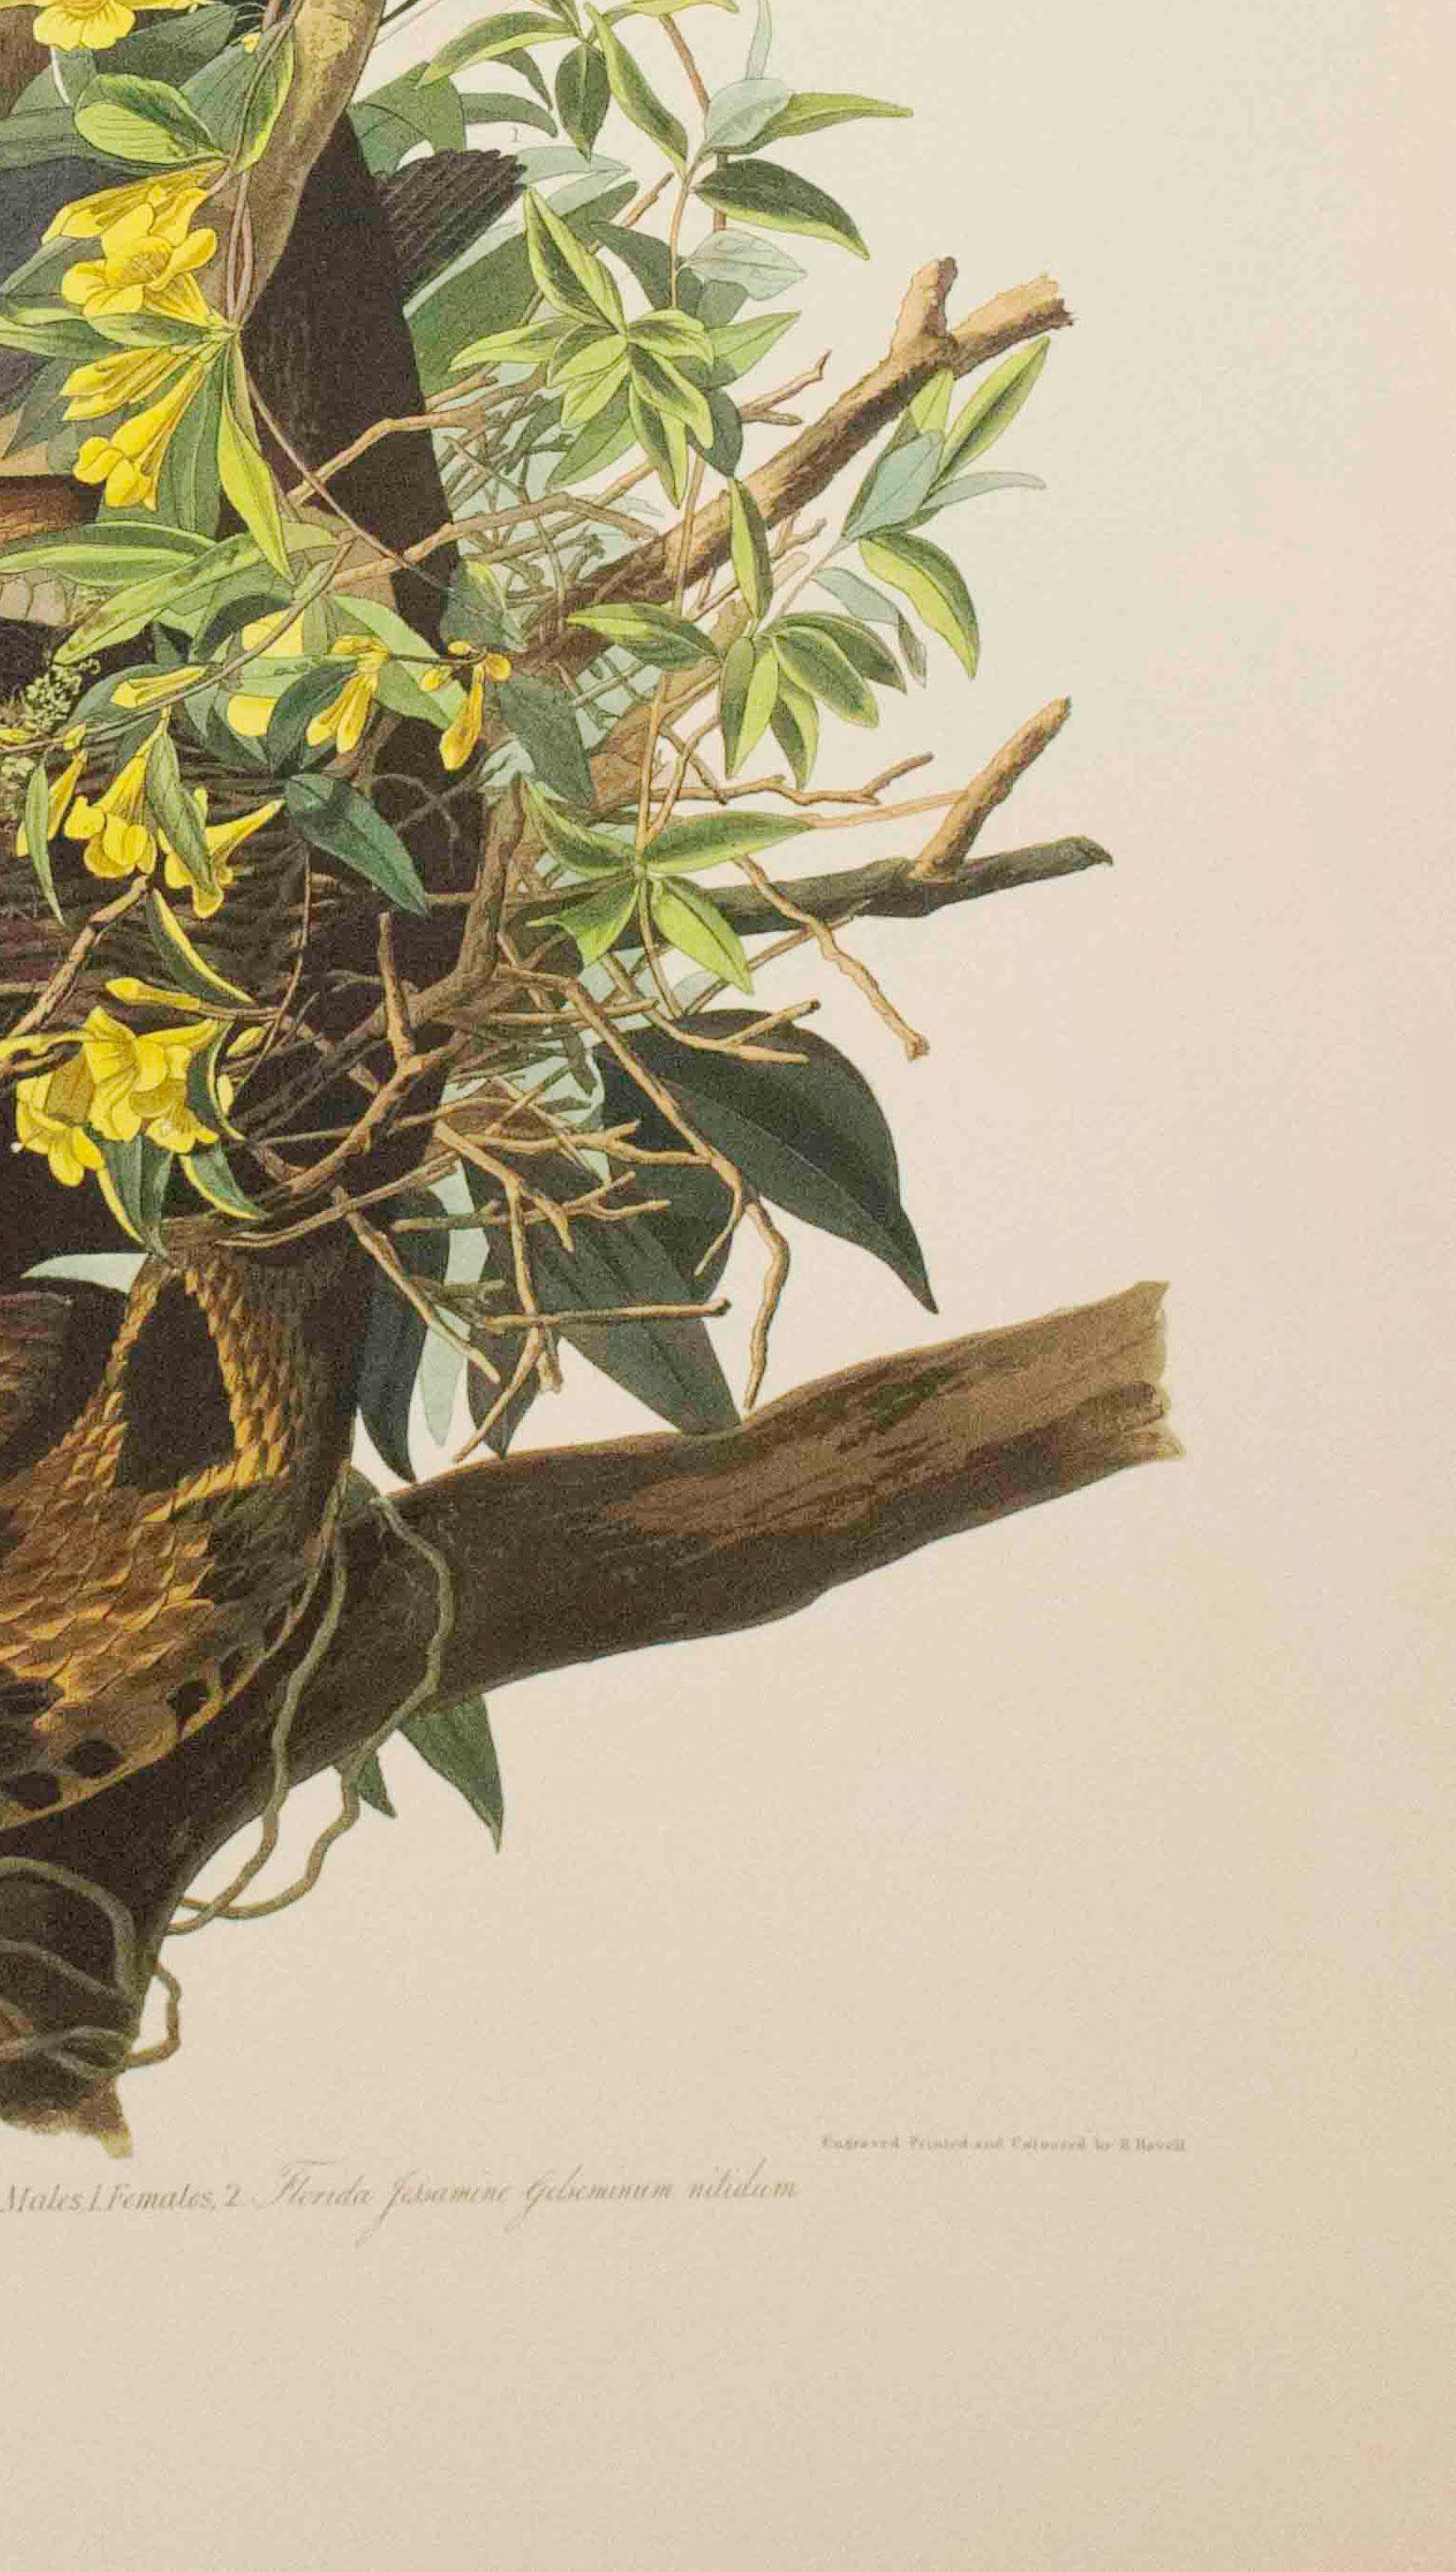 Cette pièce est une lithographie tirée d'un portfolio des cinquante meilleures aquarelles d'Audubon publié par Joel Oppenheimer et le Field Museum en 1999. Cette collection comprend cinquante des meilleures aquarelles d'oiseaux de John James Audubon